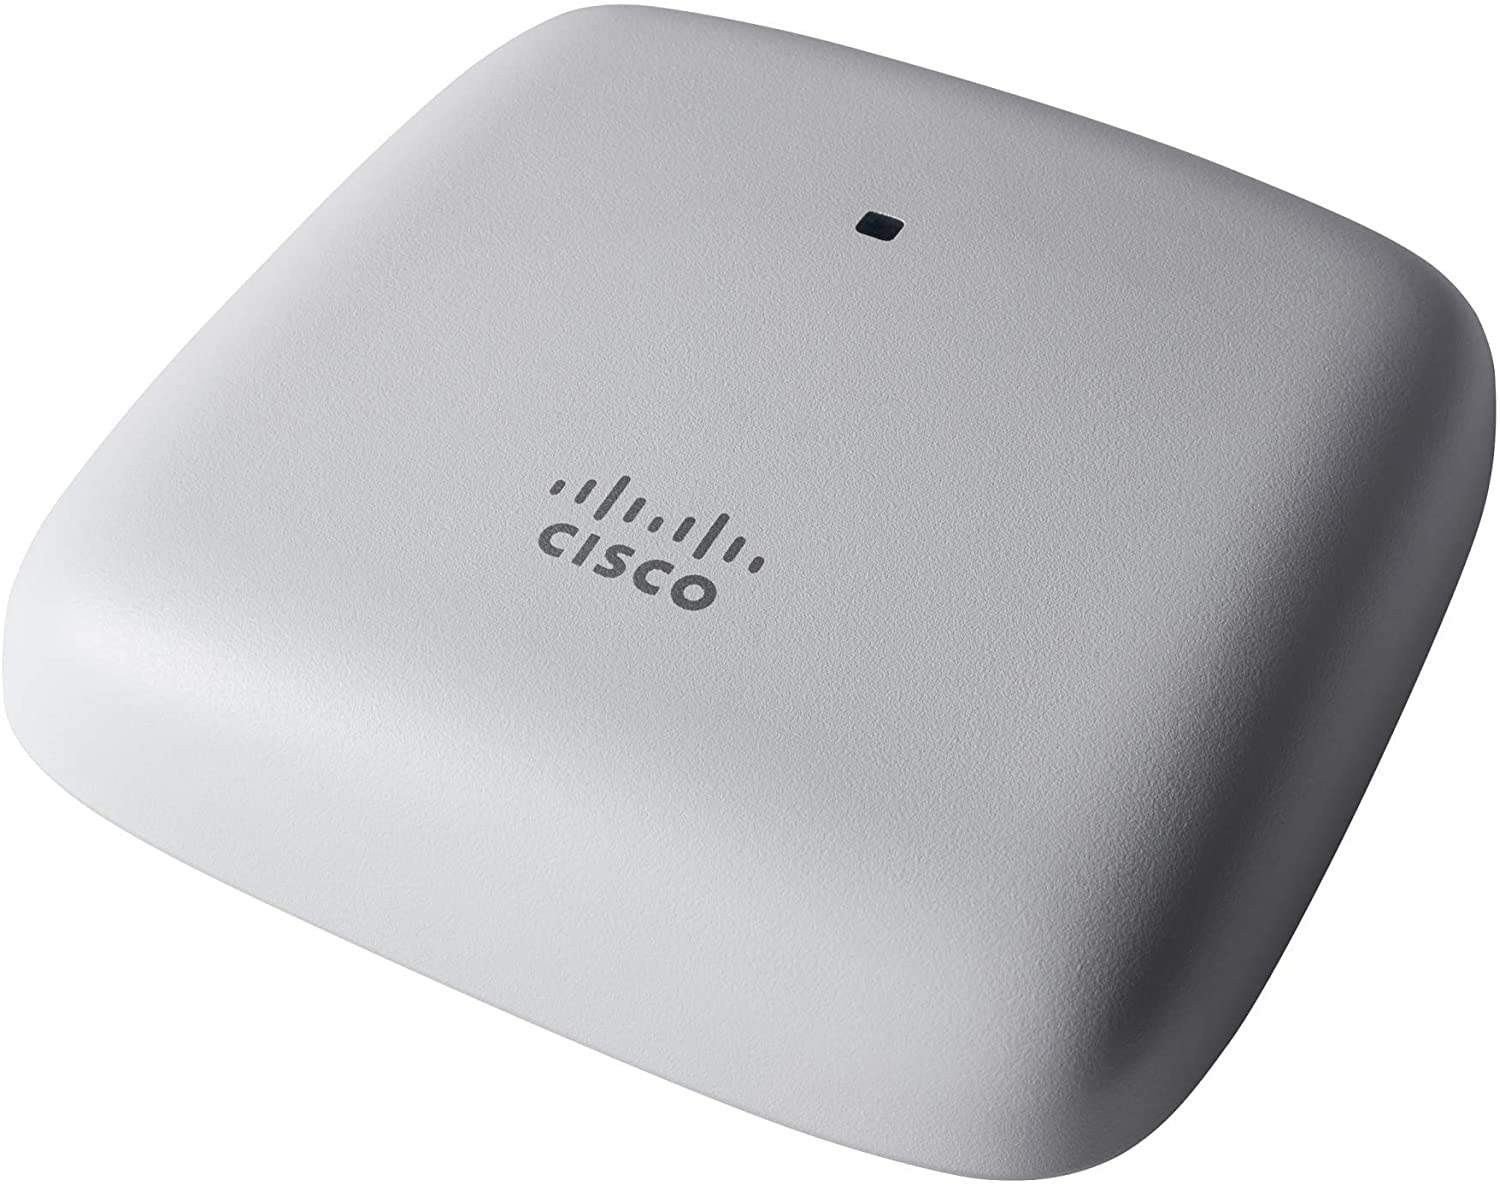 Cisco Business 140AC 802.11ac 2x2 Wave 2 Access Point 1 GbE-Port – Deckenmontage, eingeschränkter Schutz während der Lebensdauer (CBW140AC-E) 867 Mbit/s/Decke oder Wand/1GE-Port/Einzelpaket